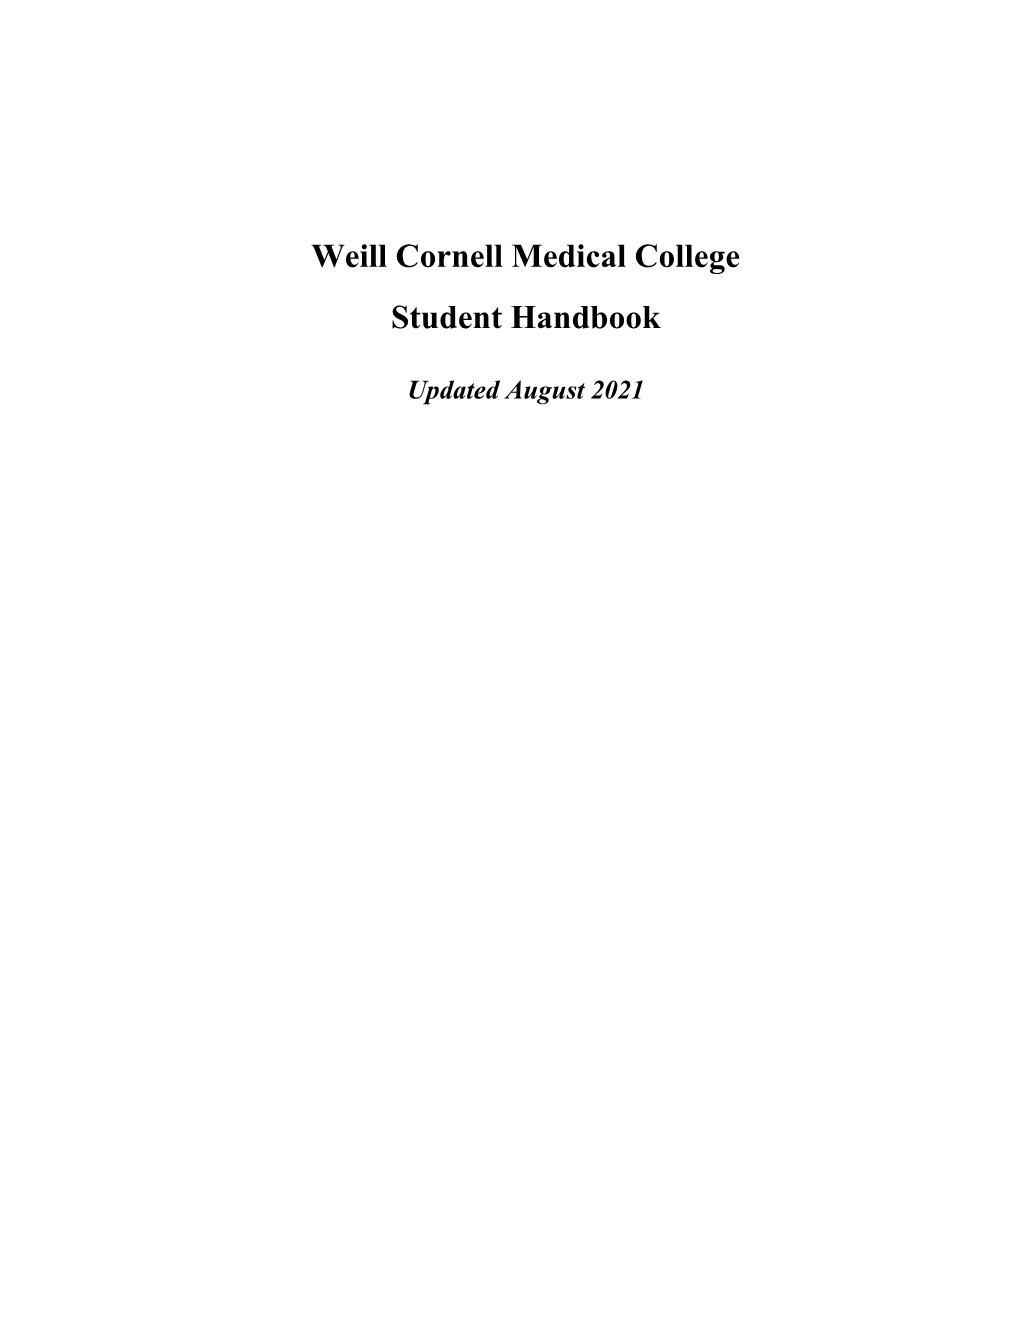 Weill Cornell Medical College Student Handbook